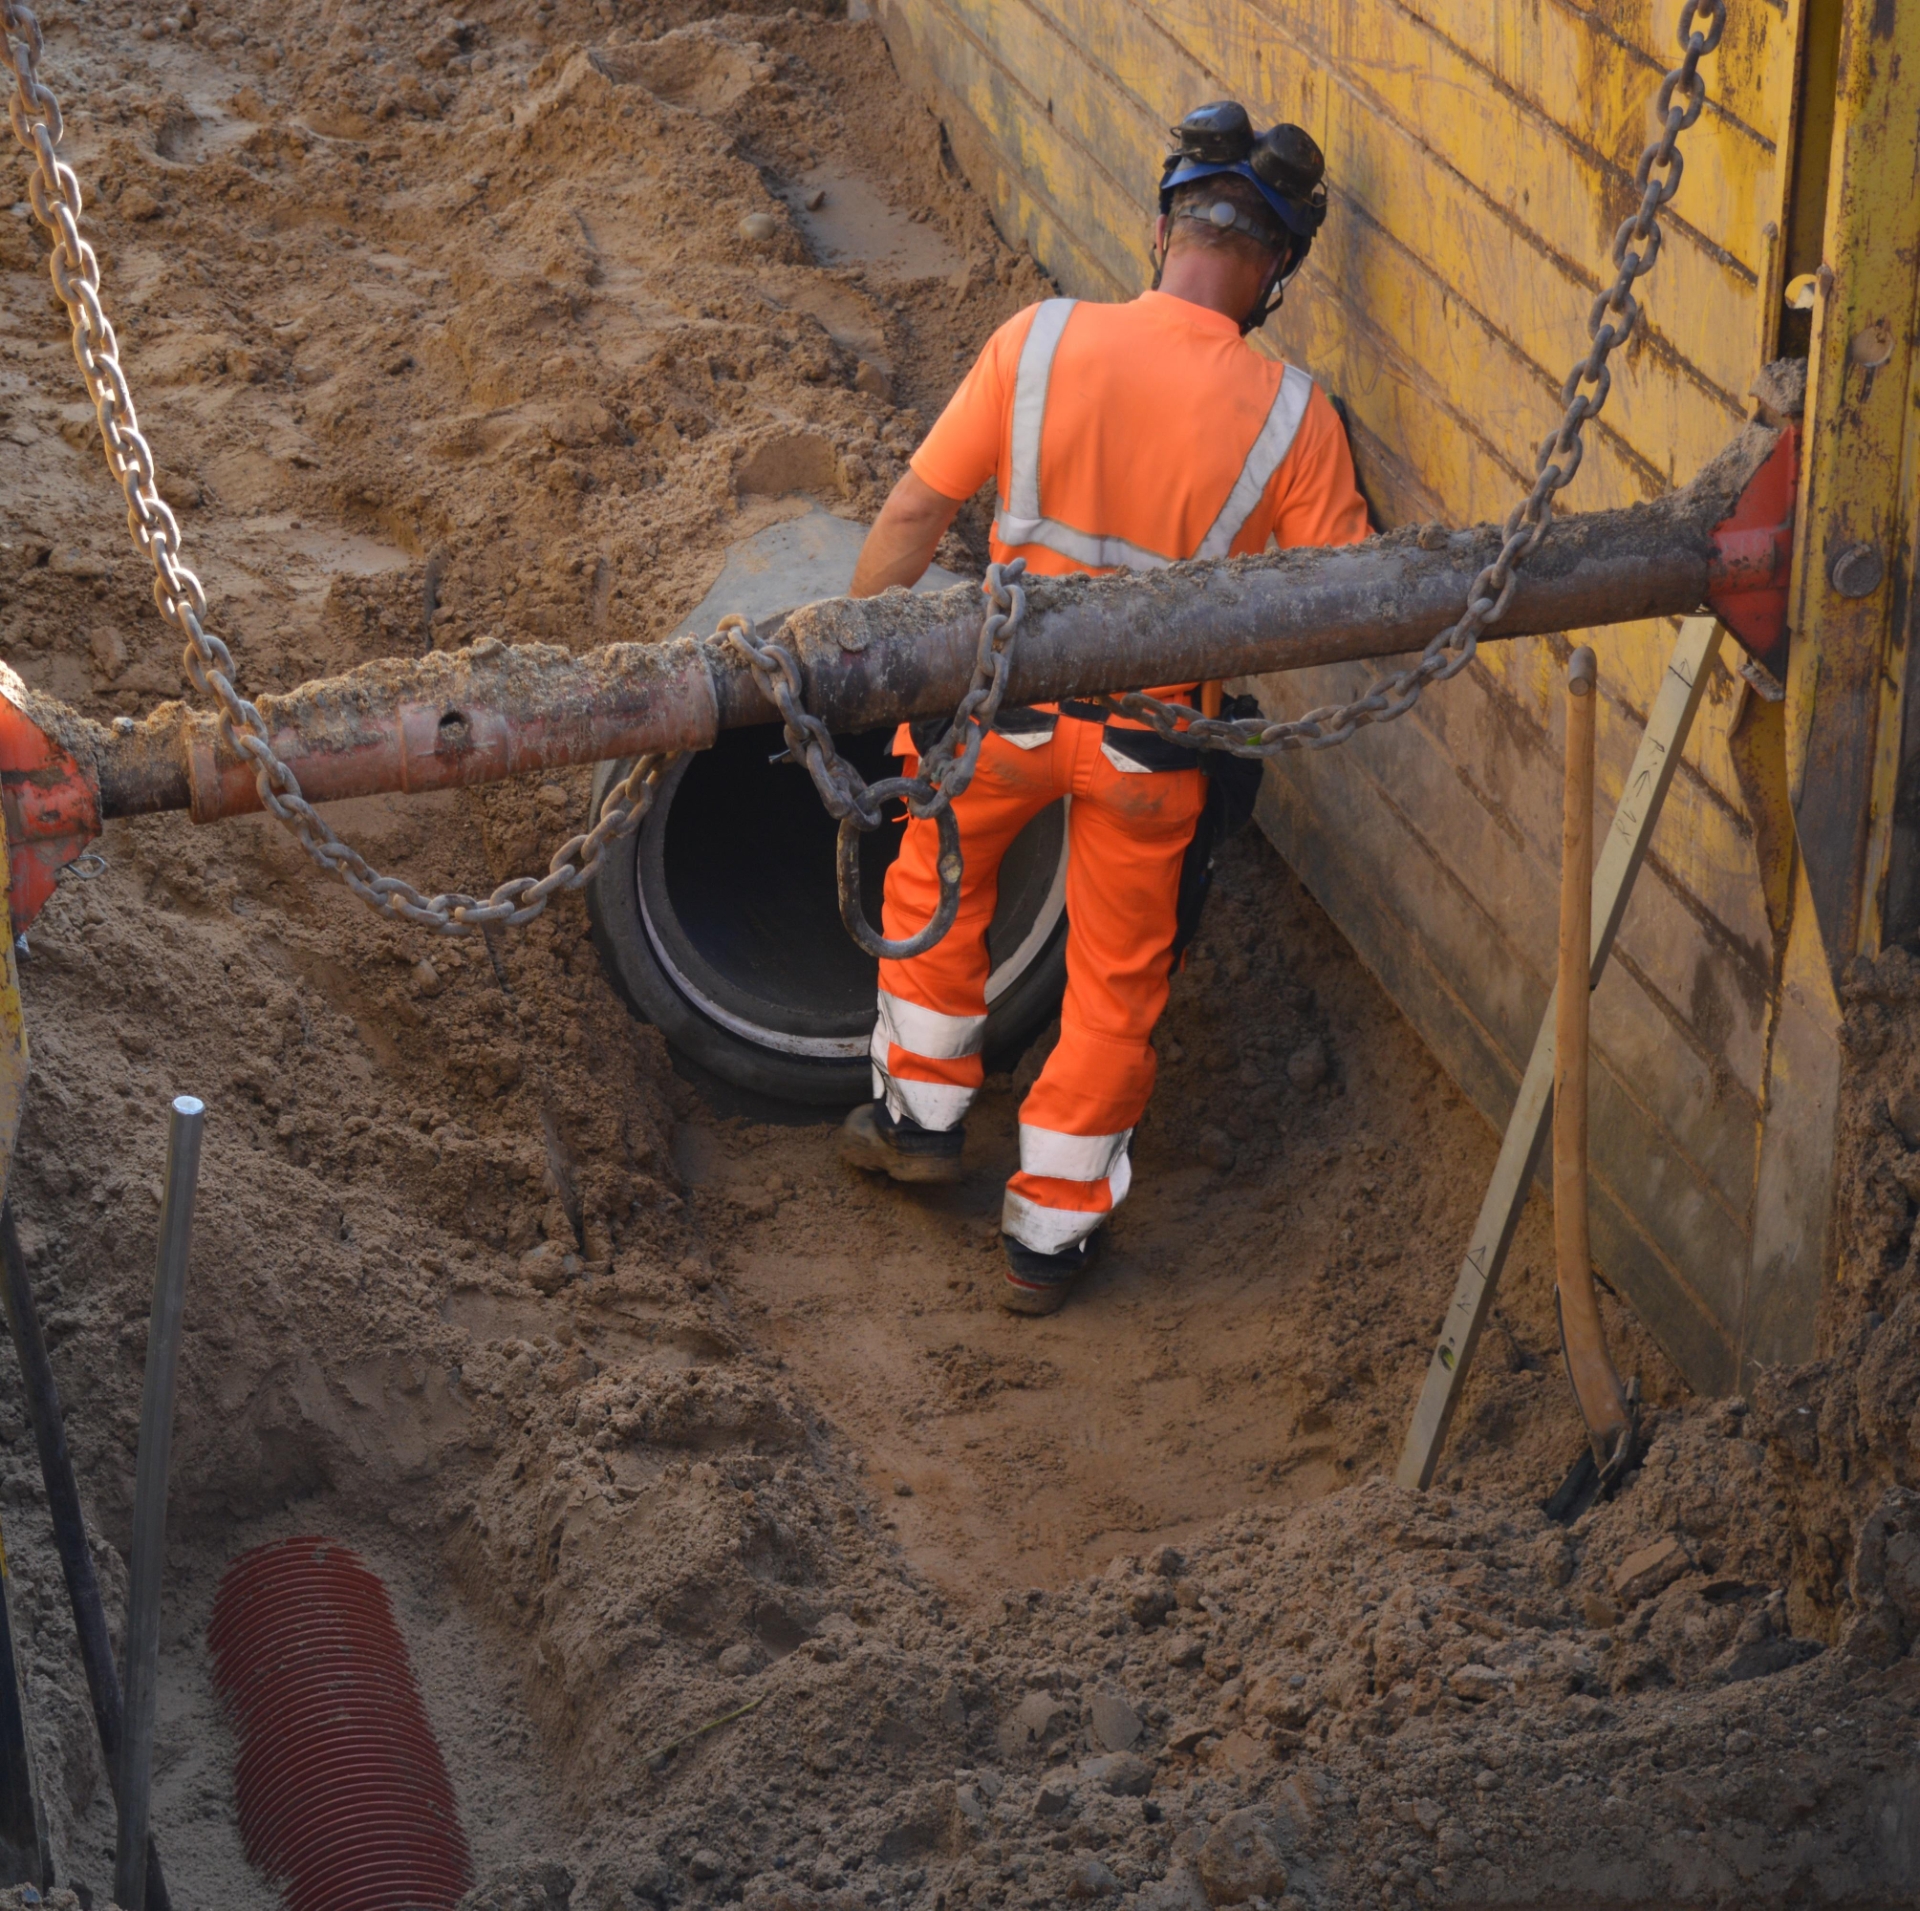 På billedet ser man en mand i orange arbejdstøj. Han står nede i et hul fyldt med sand. I hullet ligger der et stort cementrør.